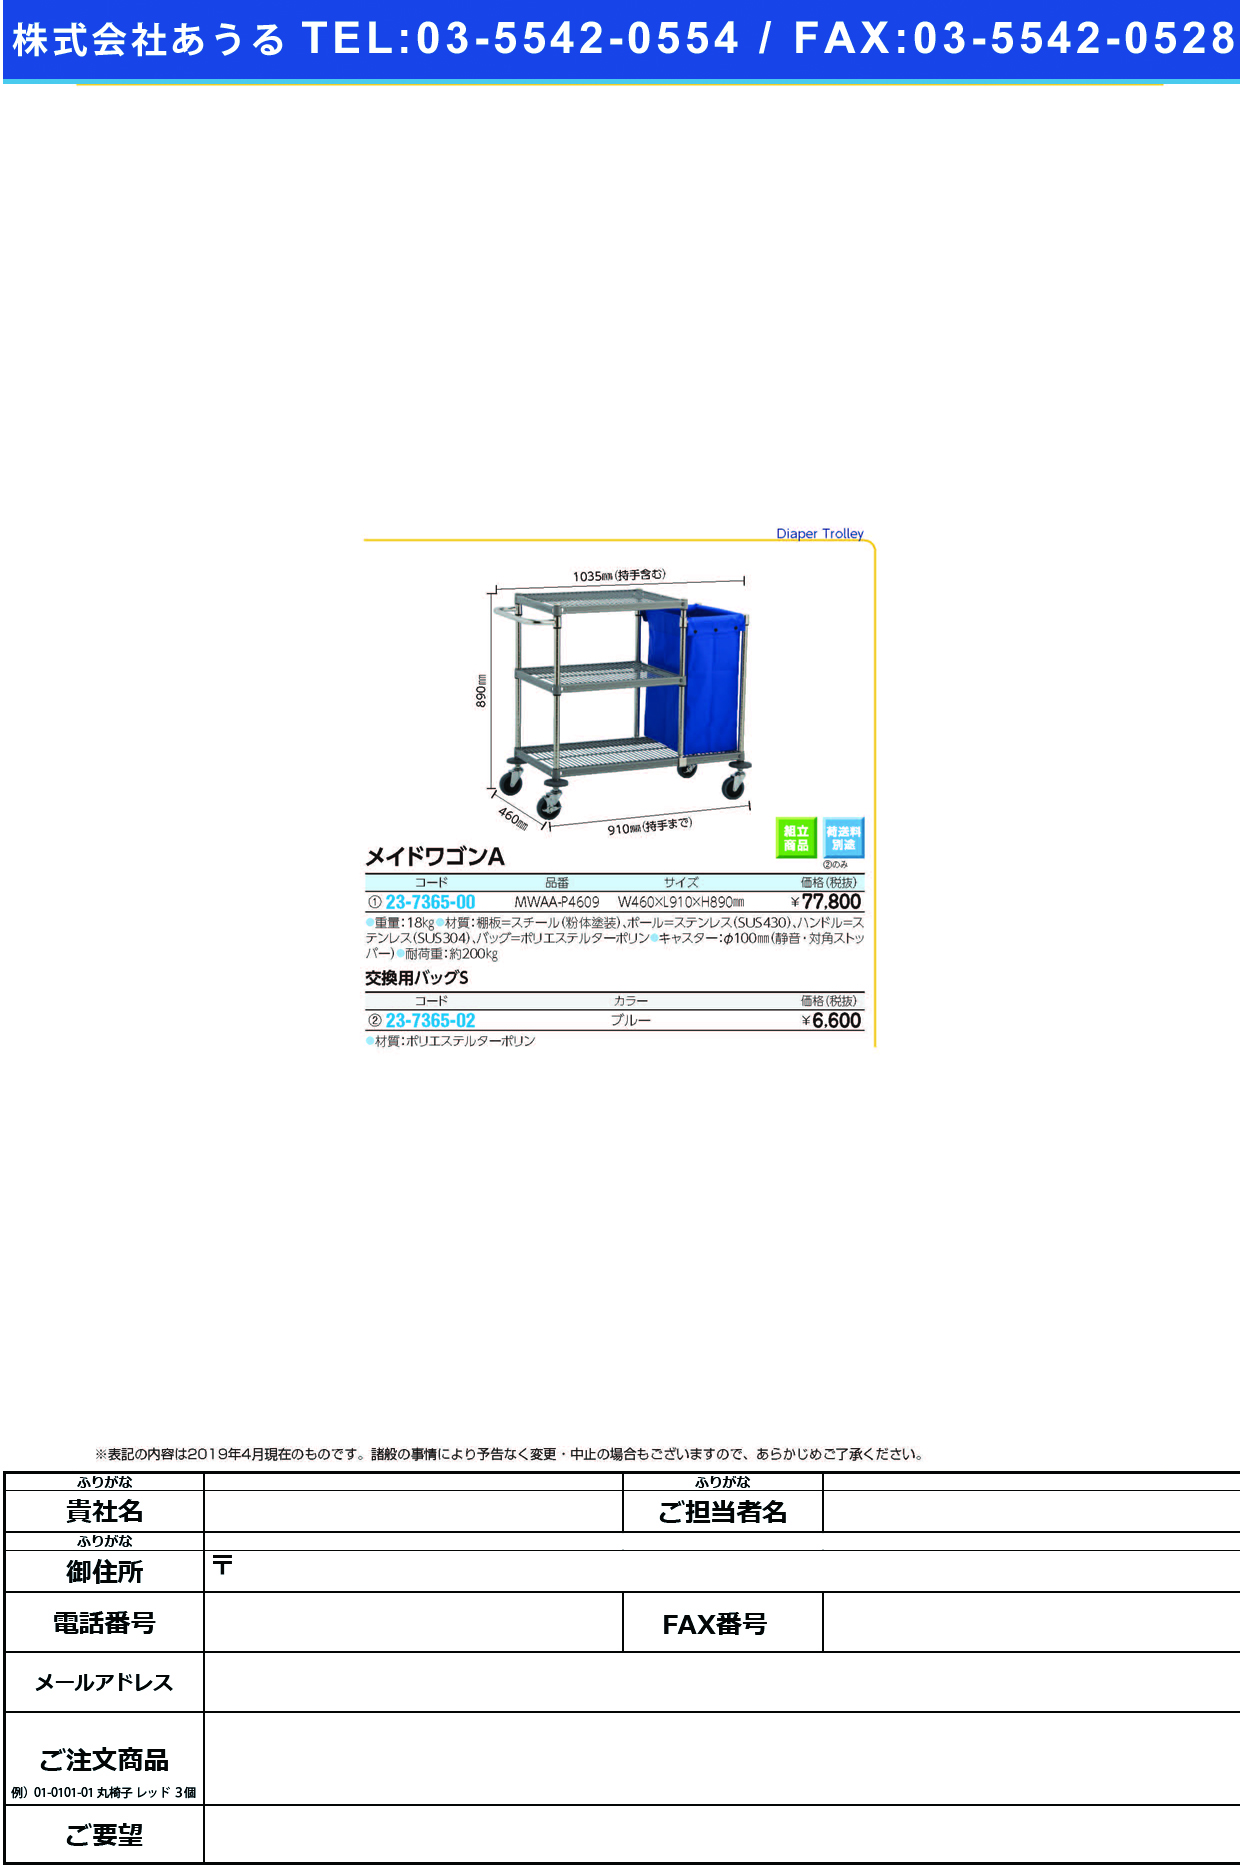 (23-7365-00)メイドワゴンＡ MWAA-P4609 ﾒｲﾄﾞﾜｺﾞﾝA【1台単位】【2019年カタログ商品】